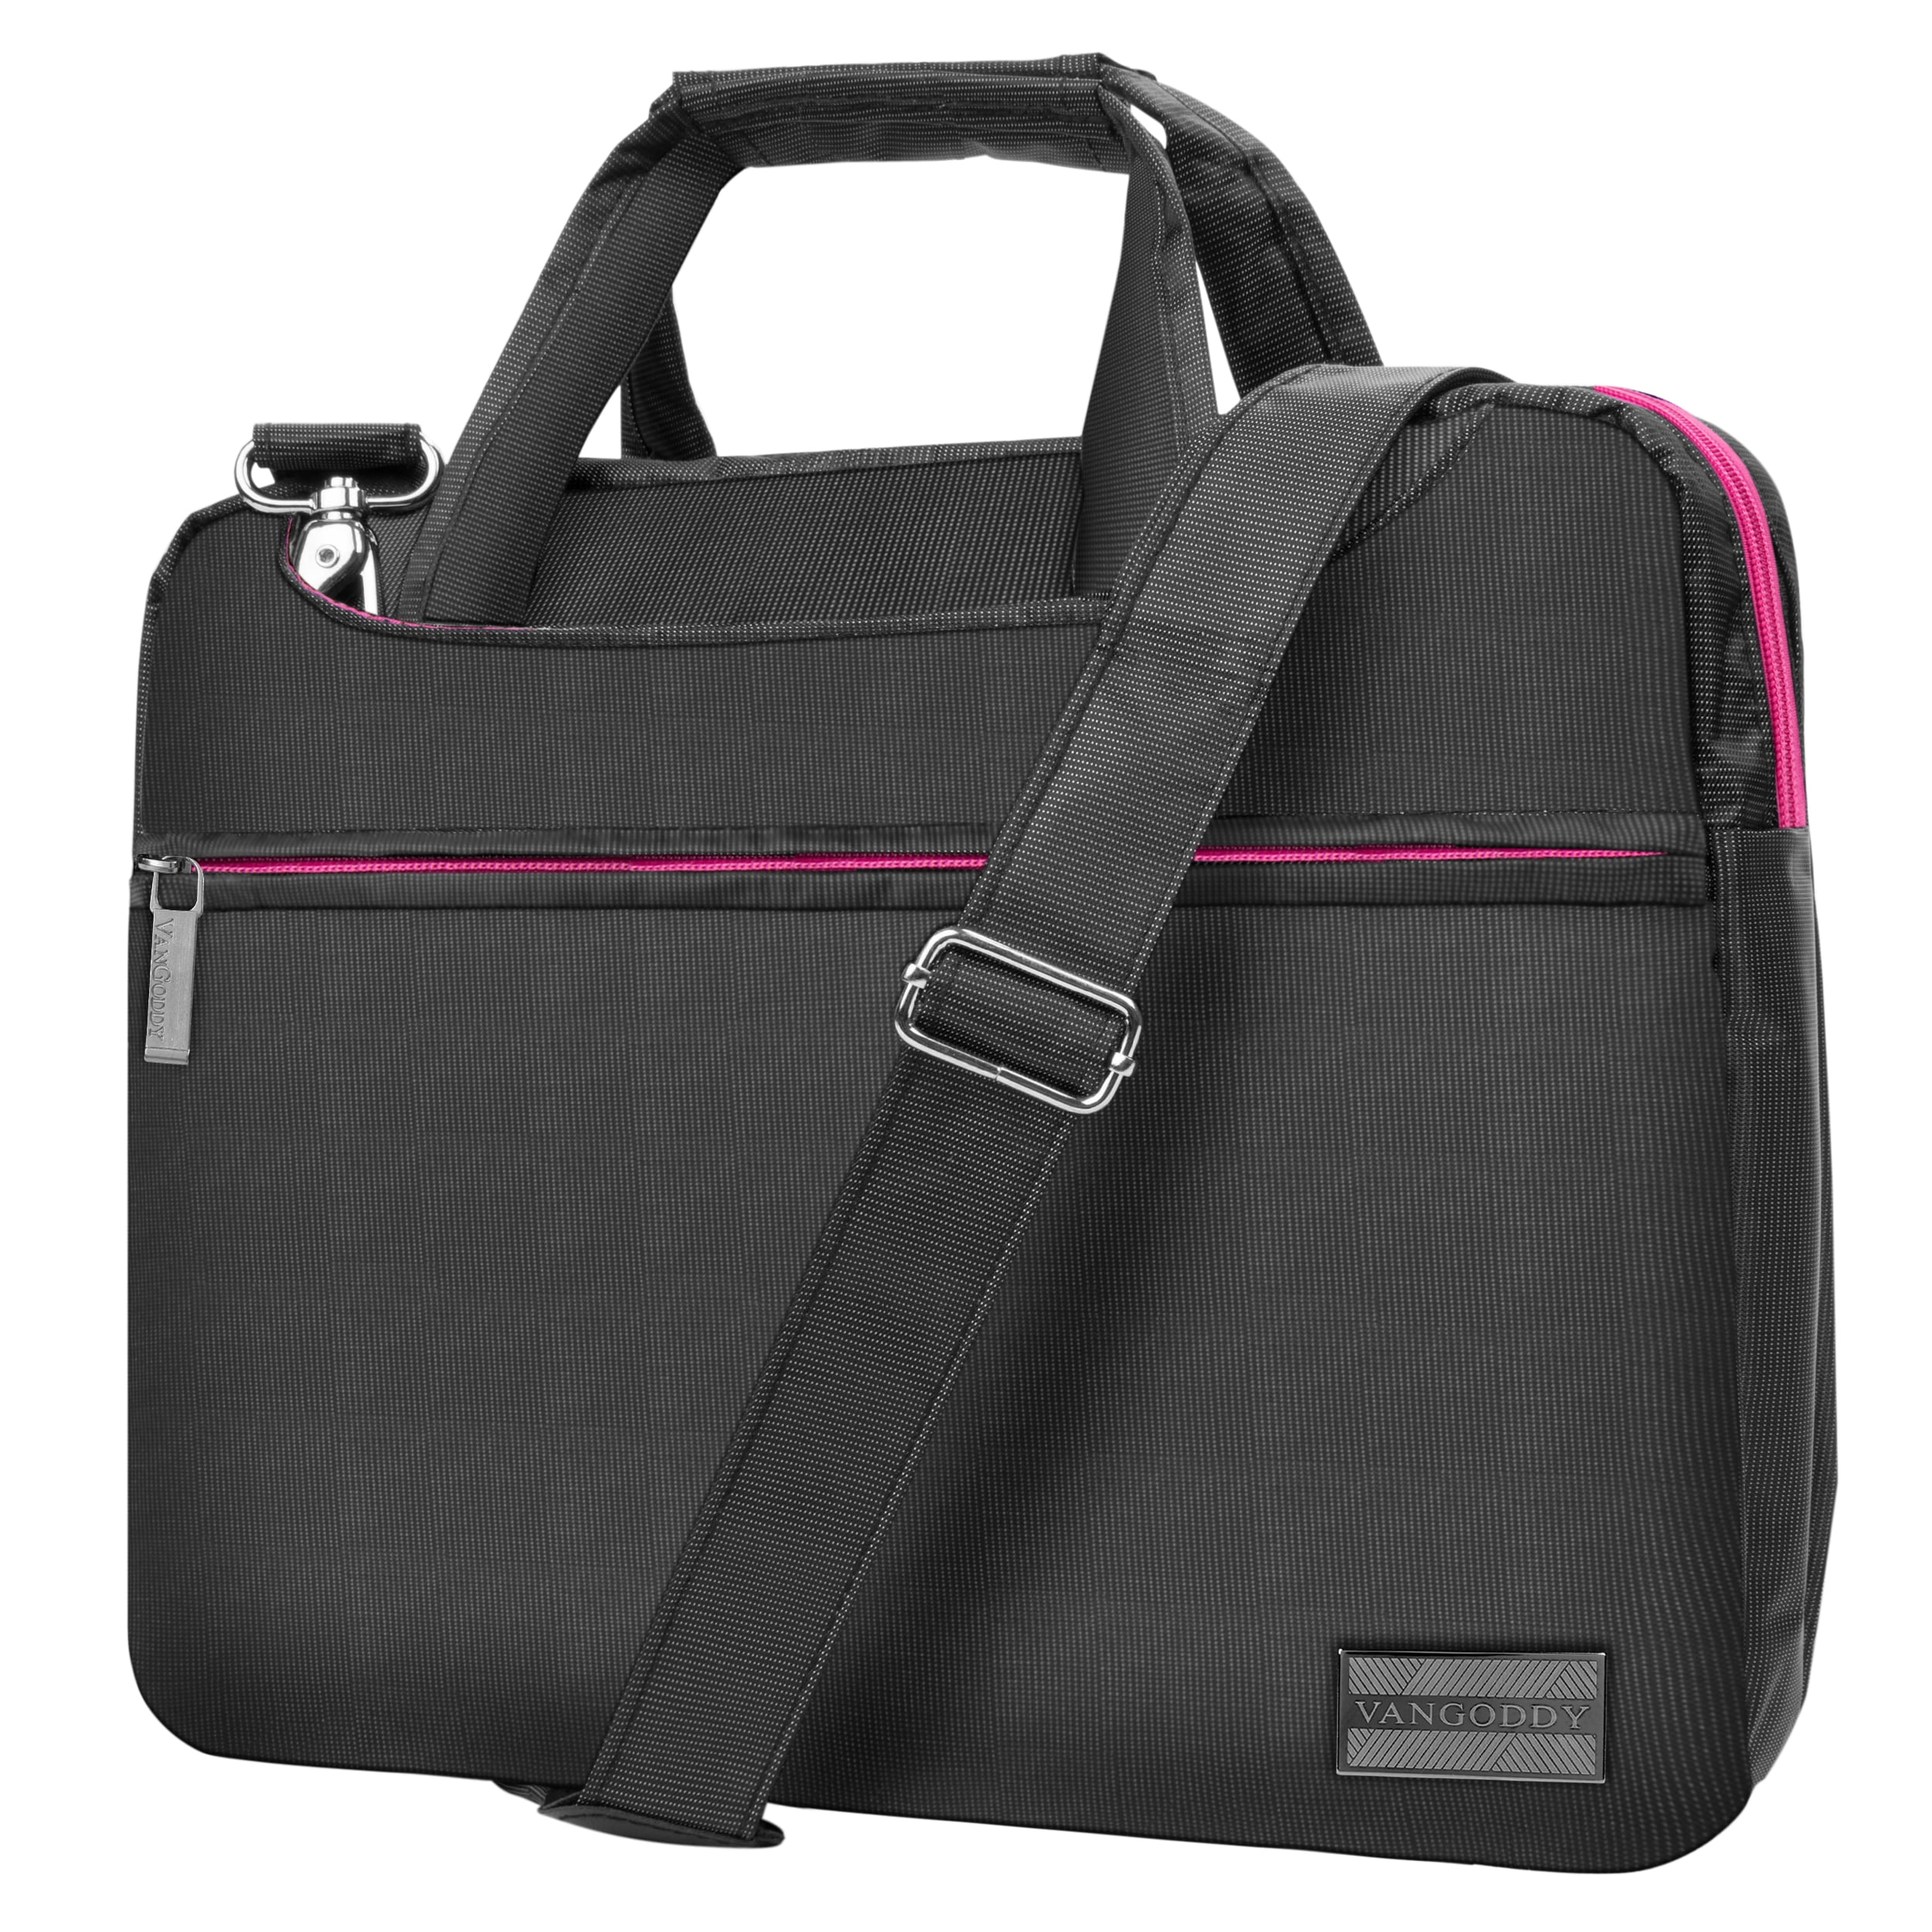 Briefcase Messenger Shoulder Bag for Men Women Laptop Bag Black Dog Bath Bathing Black Small 15-15.4 Inch Laptop Case College Students Business PEO